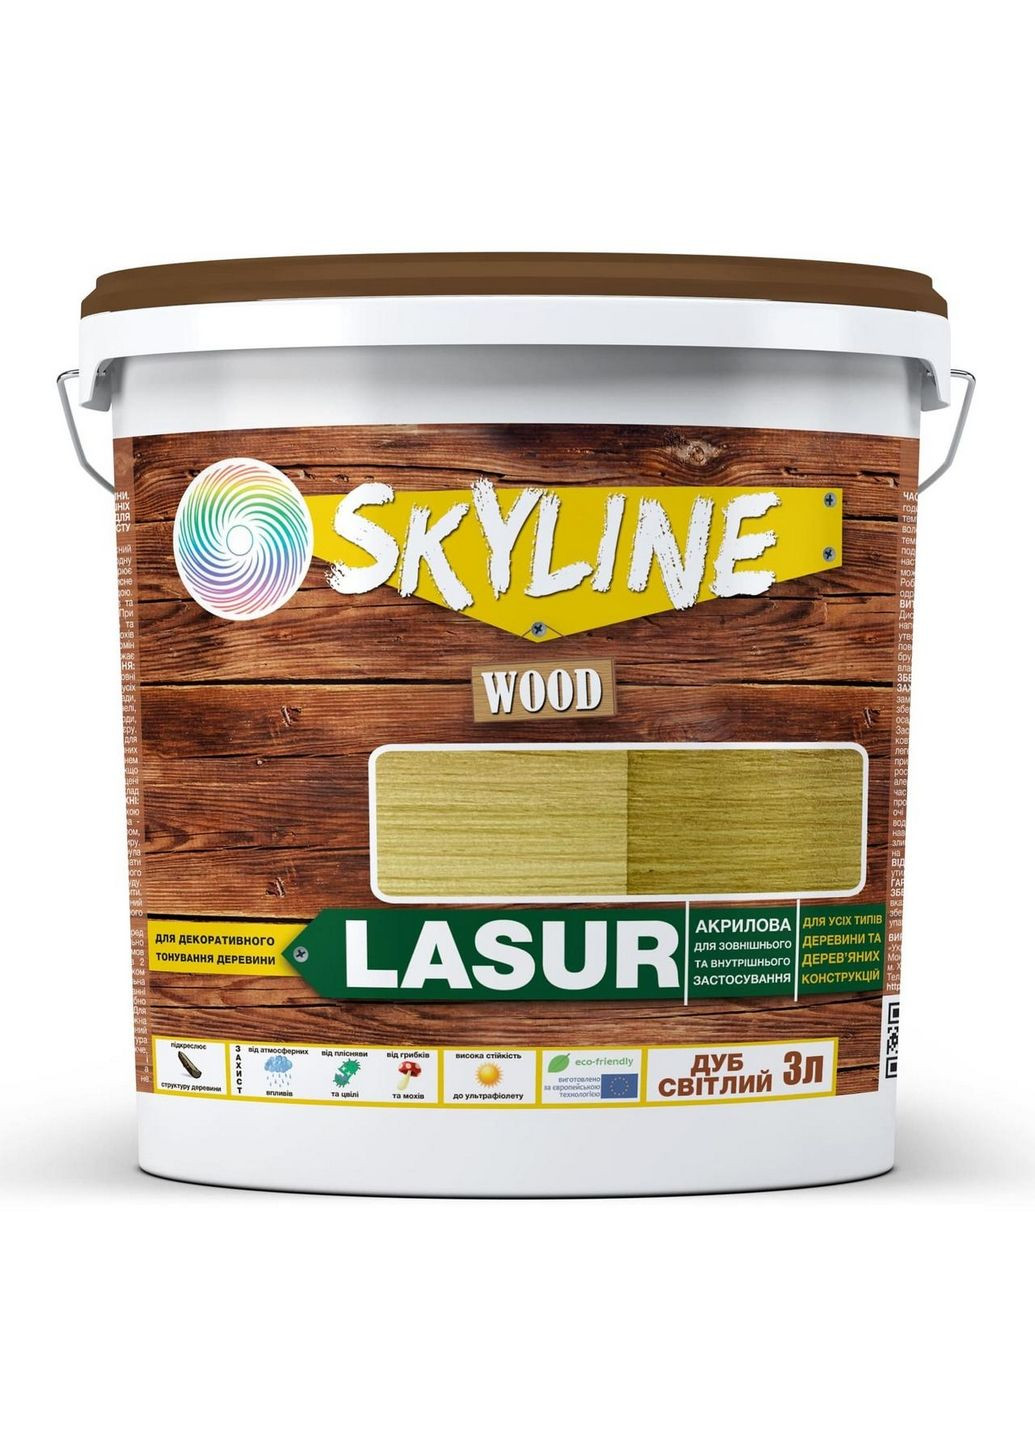 Лазурь декоративно-защитная для обработки дерева LASUR Wood 3 л SkyLine (289367724)